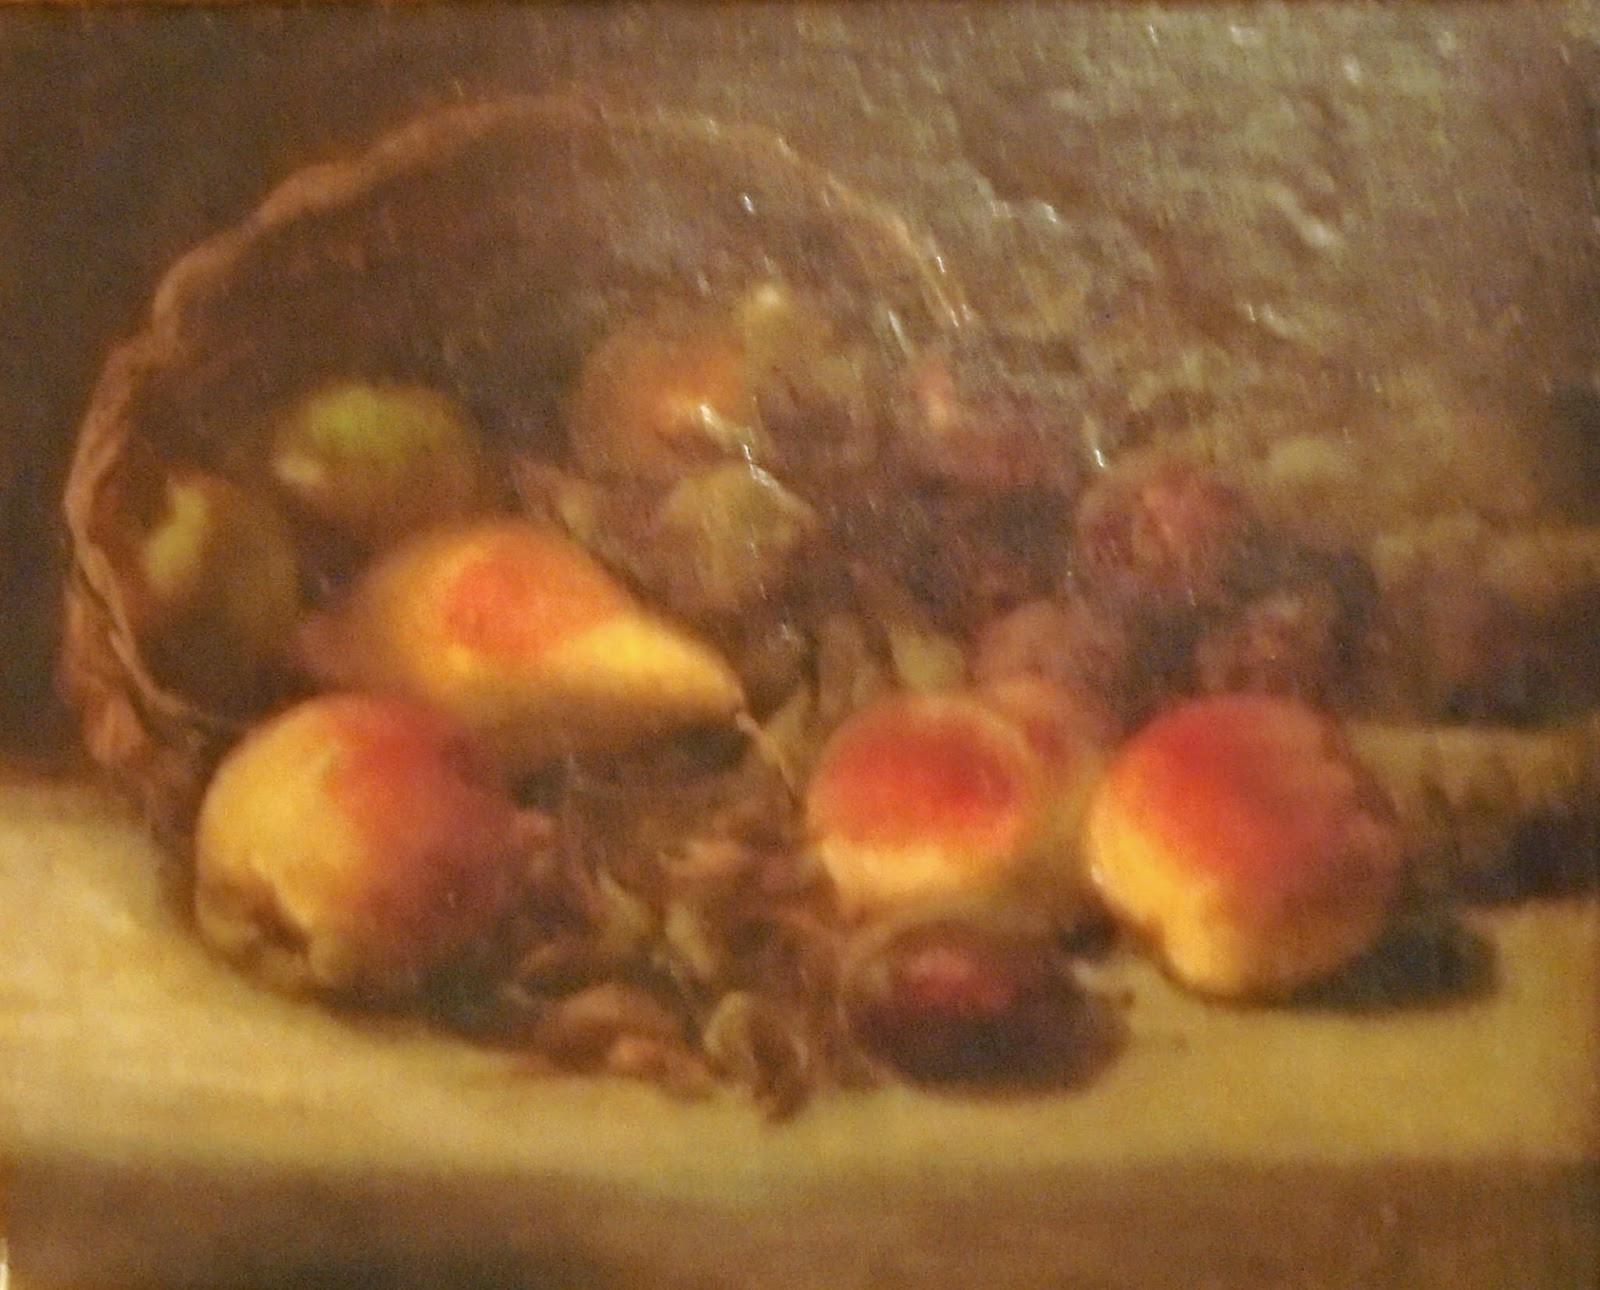 το έργο Νεκρή Φύση με Φρούτα του Περικλή Πανταζή στην Πινακοθήκη Ευάγγελος Αβέρωφ του Μετσόβου